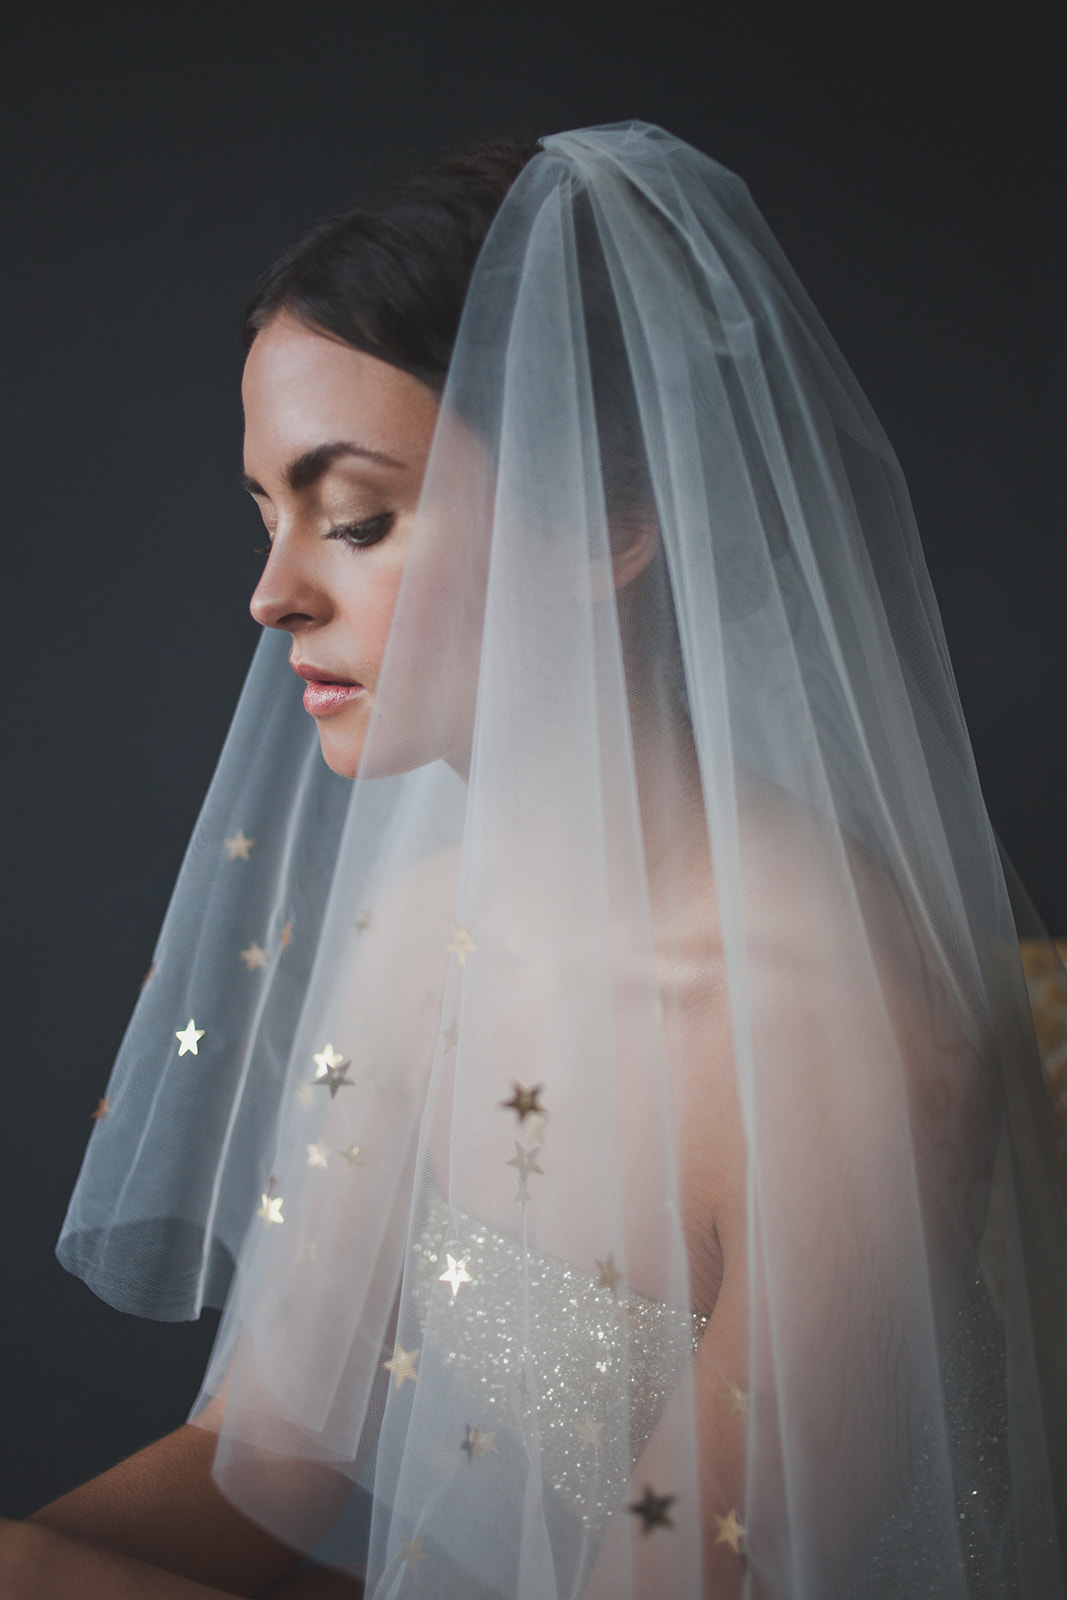 véu de noiva com detalhes em estrelas